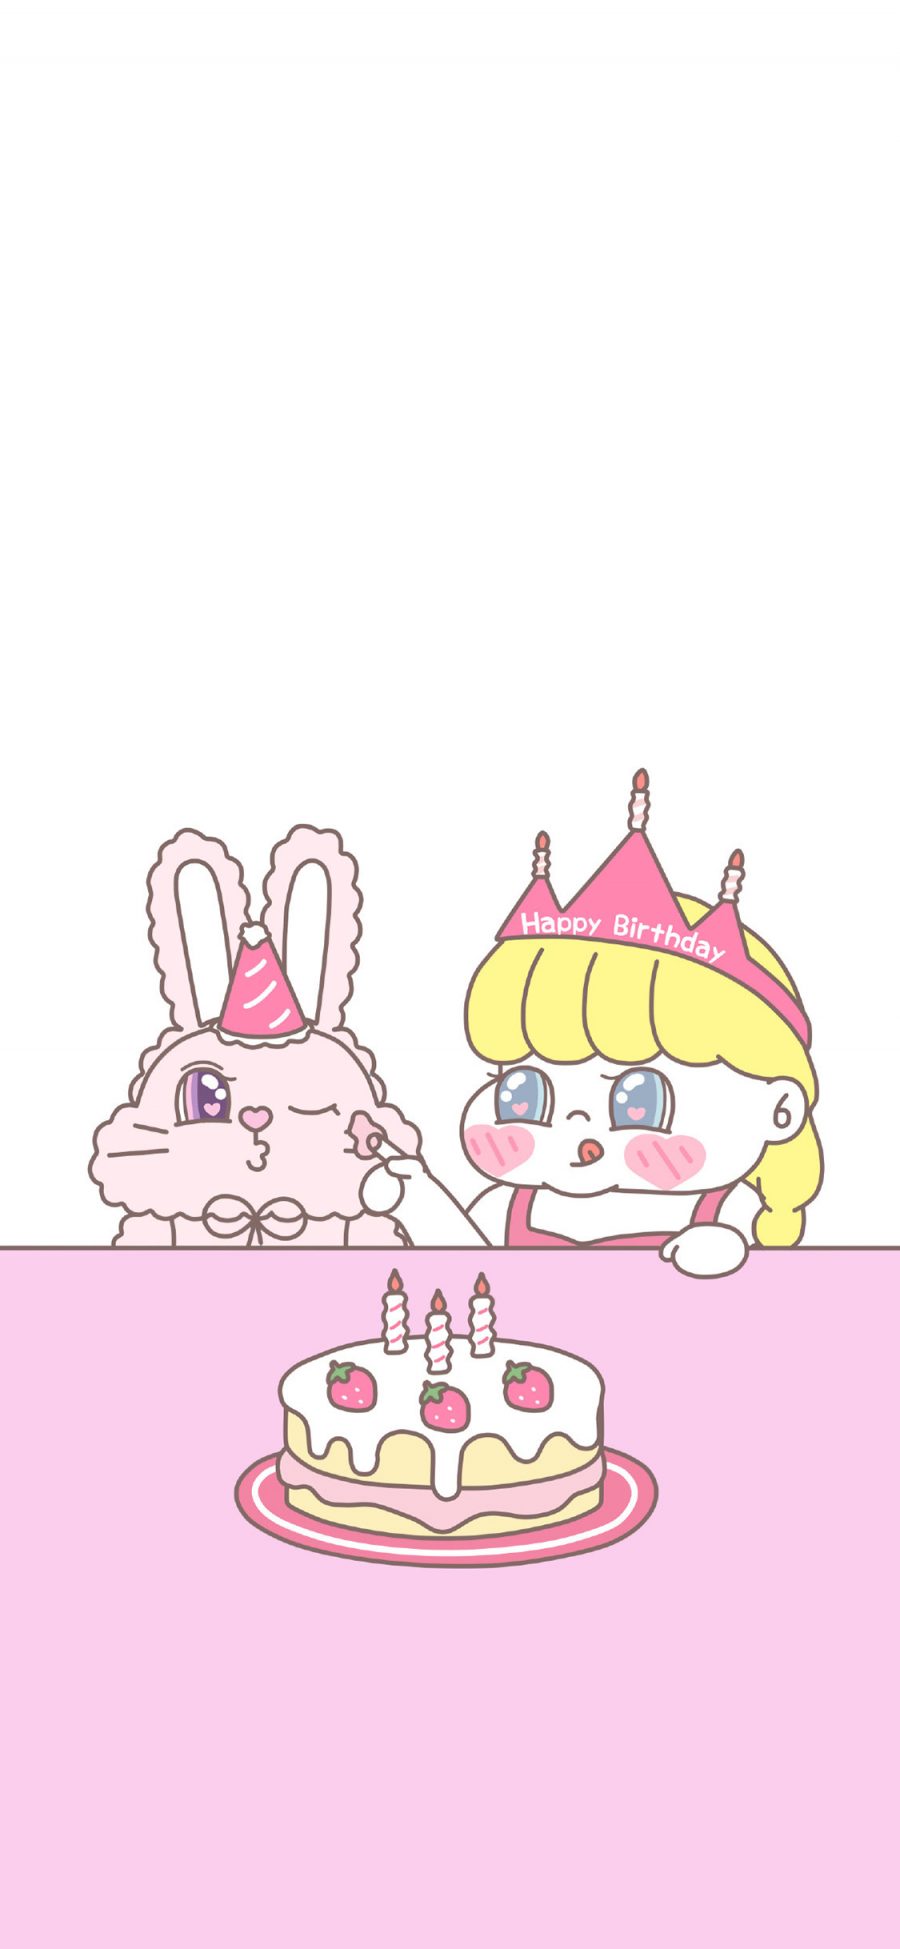 [2436×1125]生日快乐 萌咔便利店 蛋糕 兔子 小女孩 苹果手机动漫壁纸图片